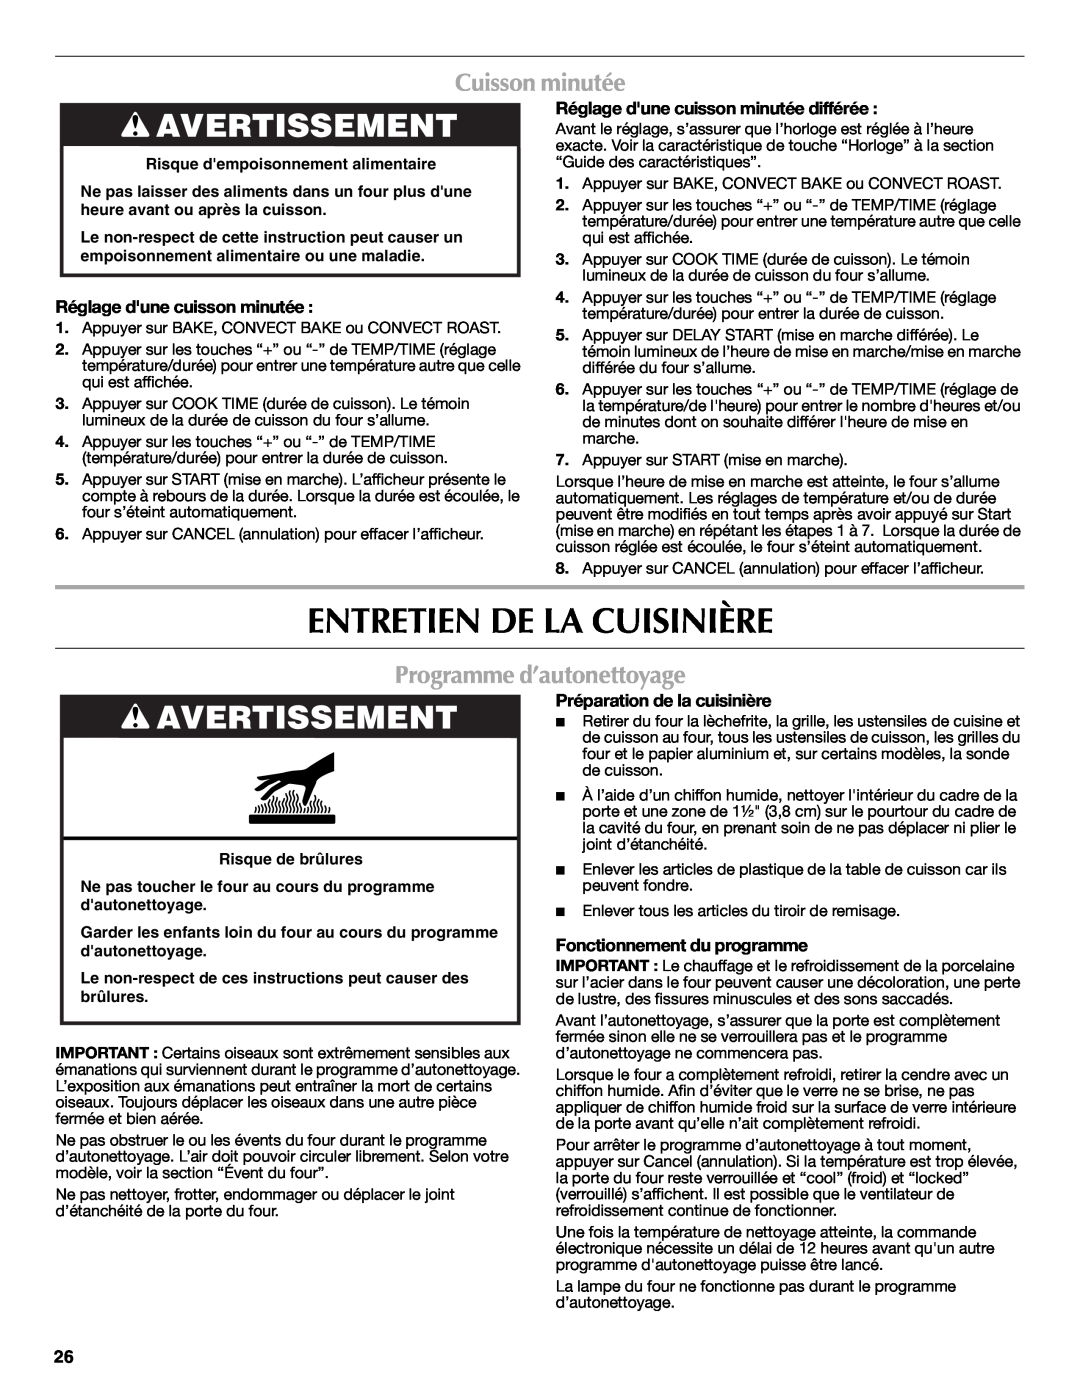 Maytag W10239464A warranty Entretien De La Cuisinière, Cuisson minutée, Programme d’autonettoyage, Avertissement 